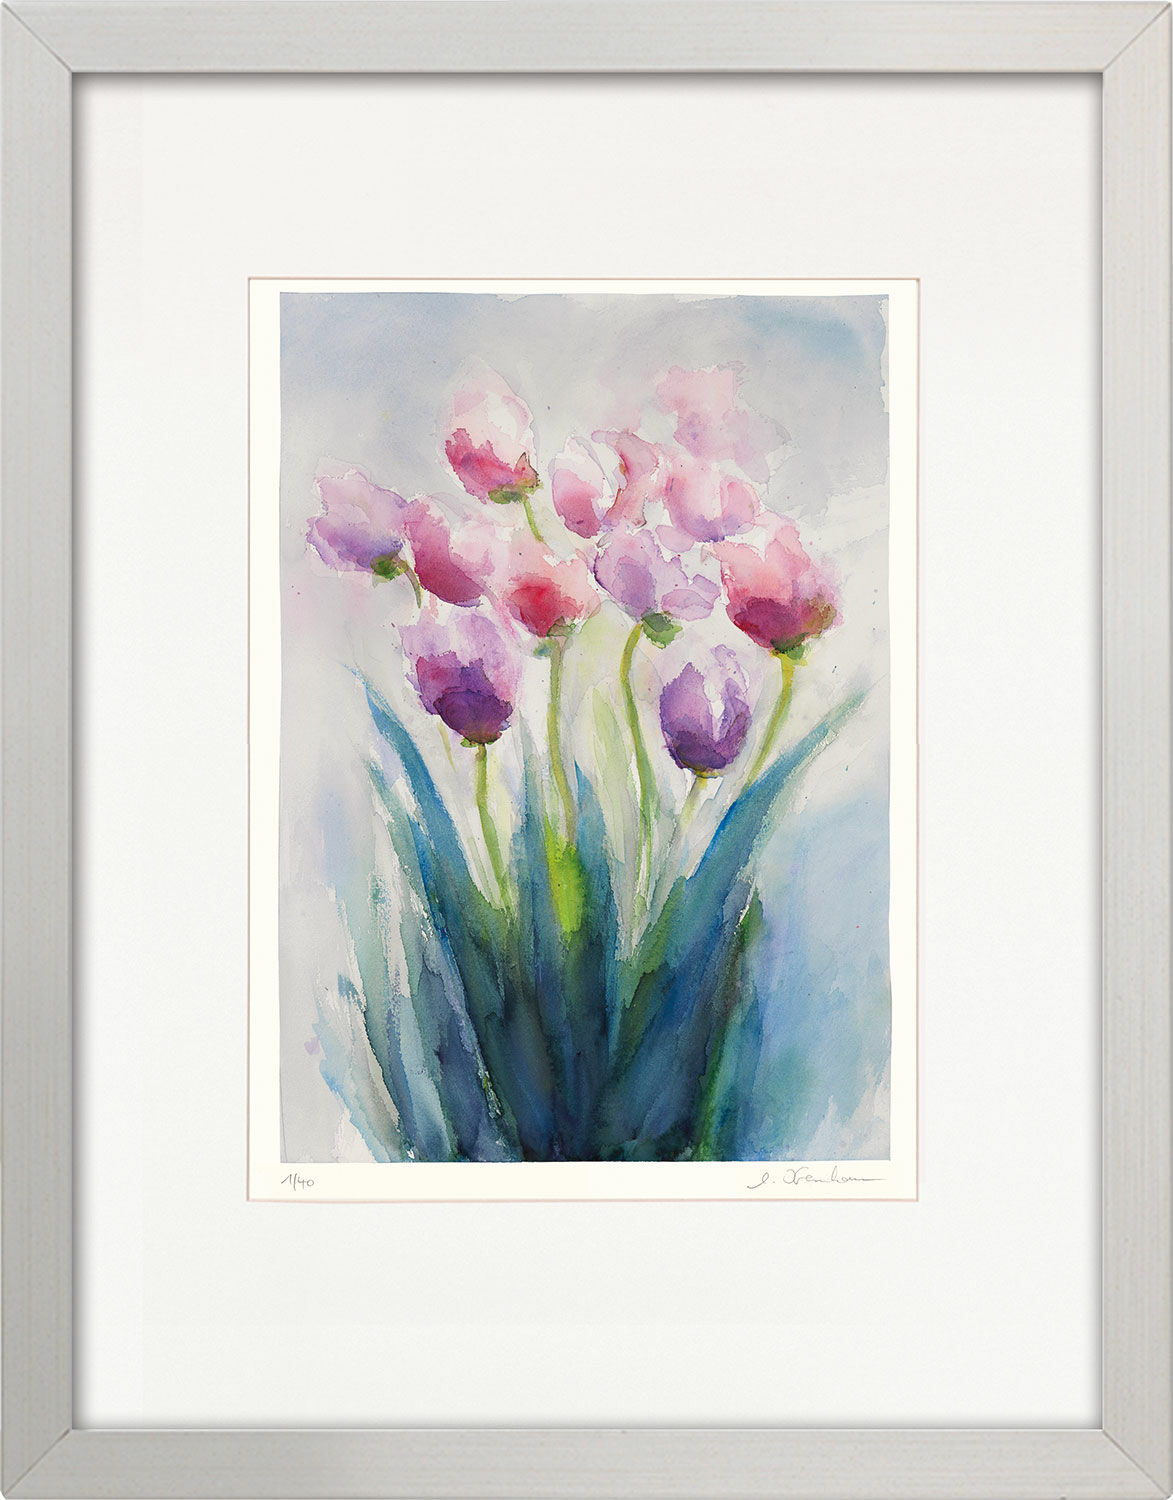 Beeld "Tulpen 2016", ingelijst von Christine Kremkau